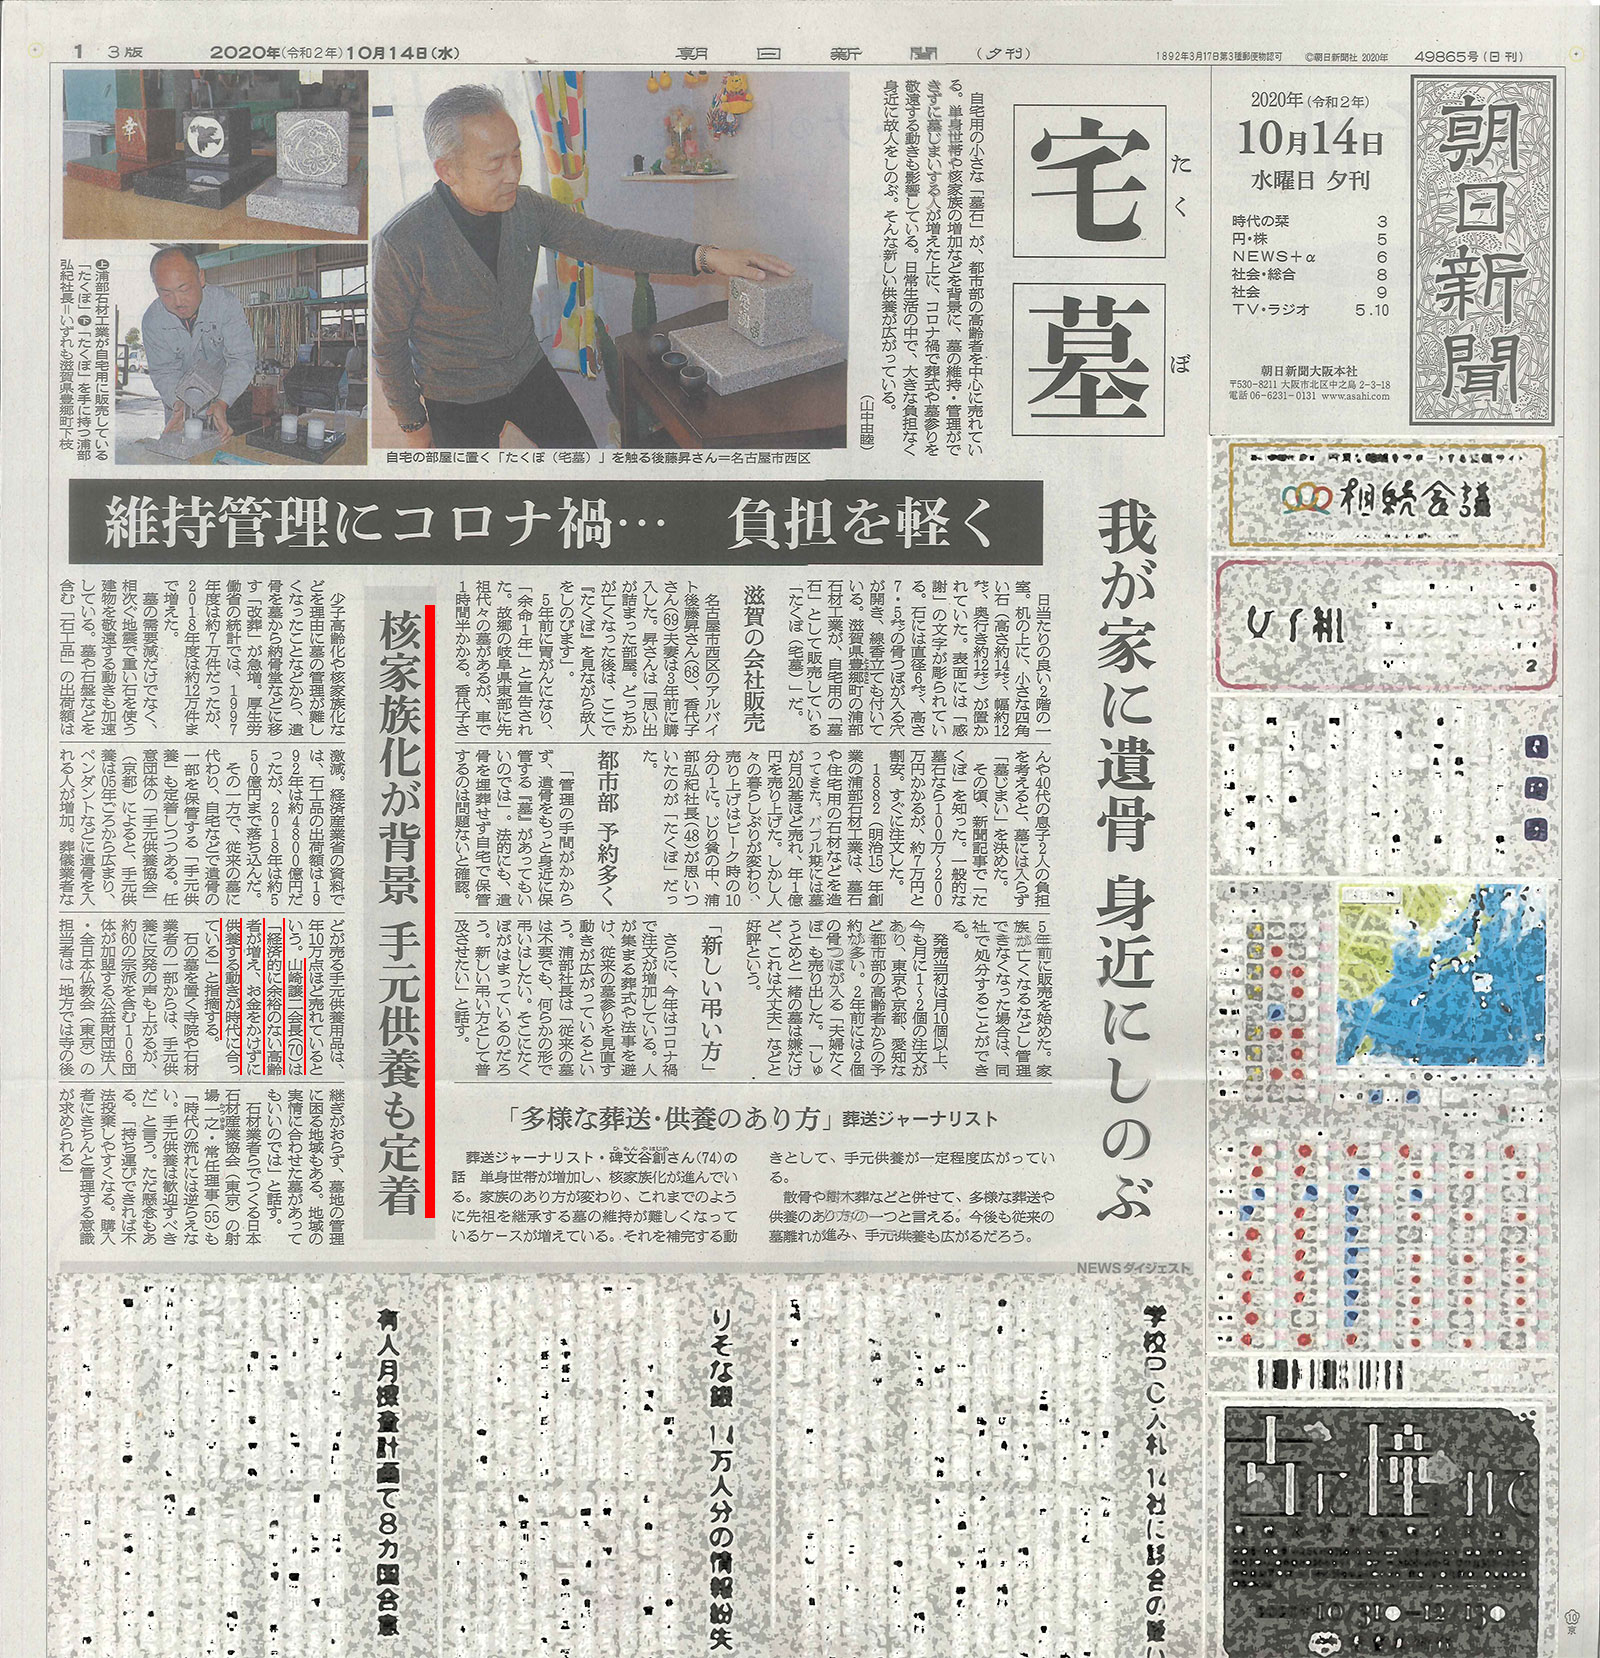 朝日新聞の手元供養の記事